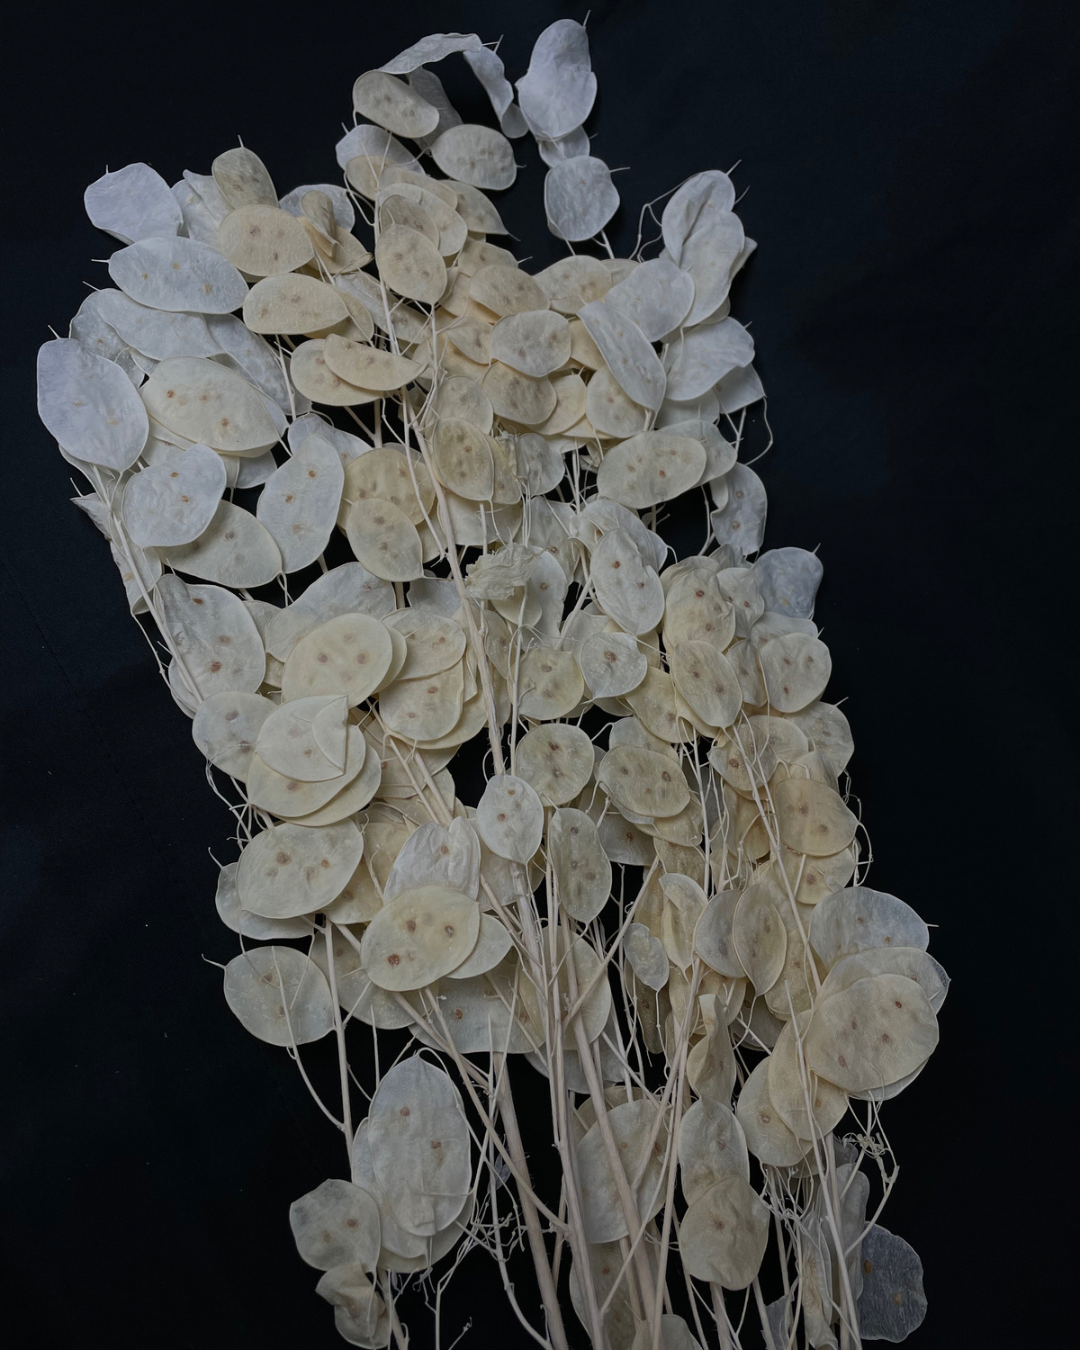 Dried Lunaria